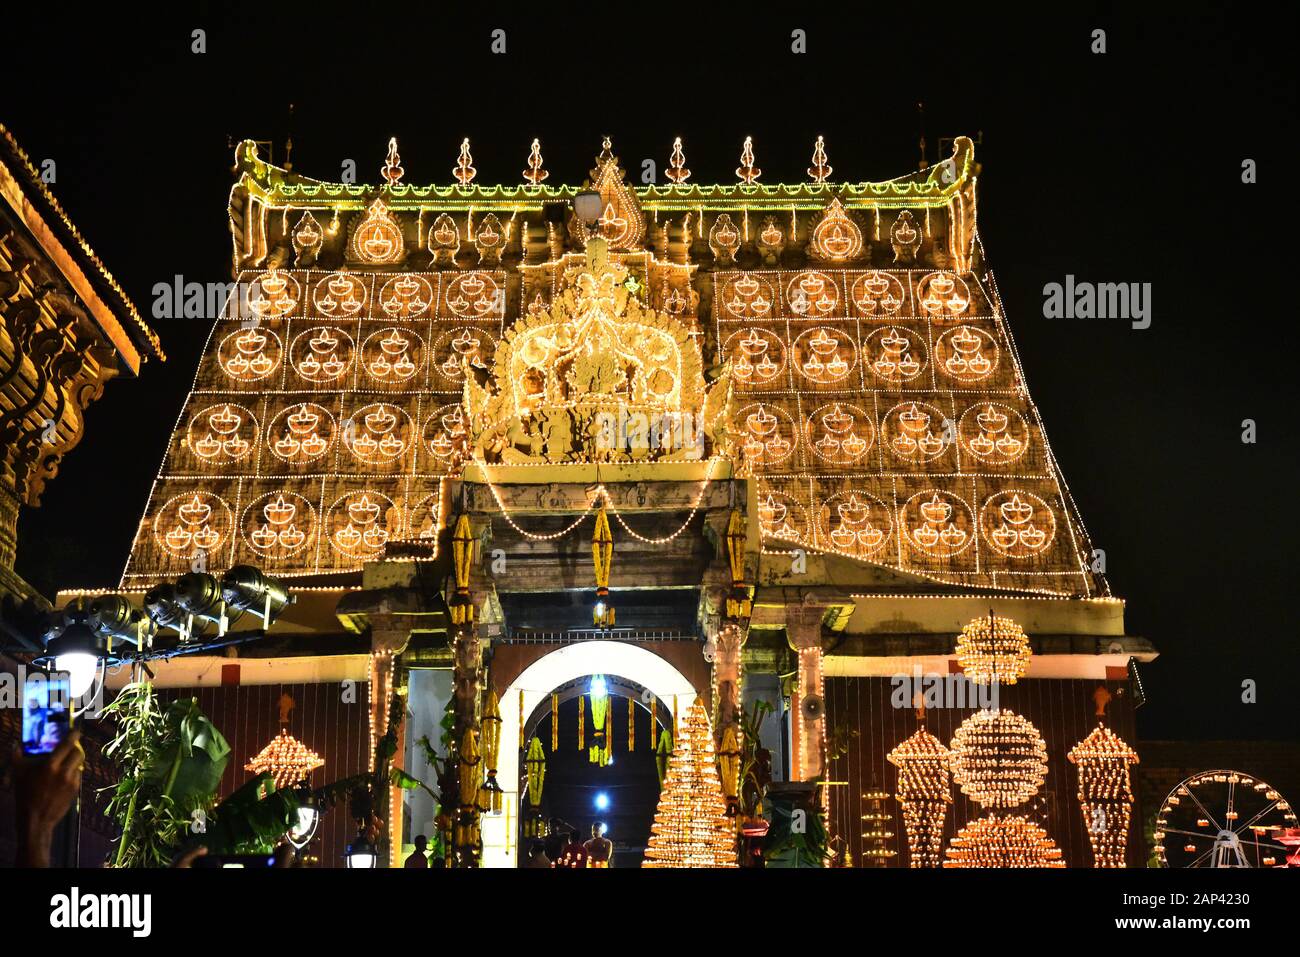 Sree padmanabhaswamy temple pendant la cérémonie lakshadepam,thiruvananthapuram,kerala,inde.Ce temple a le Trésor le plus riche en inde. Banque D'Images